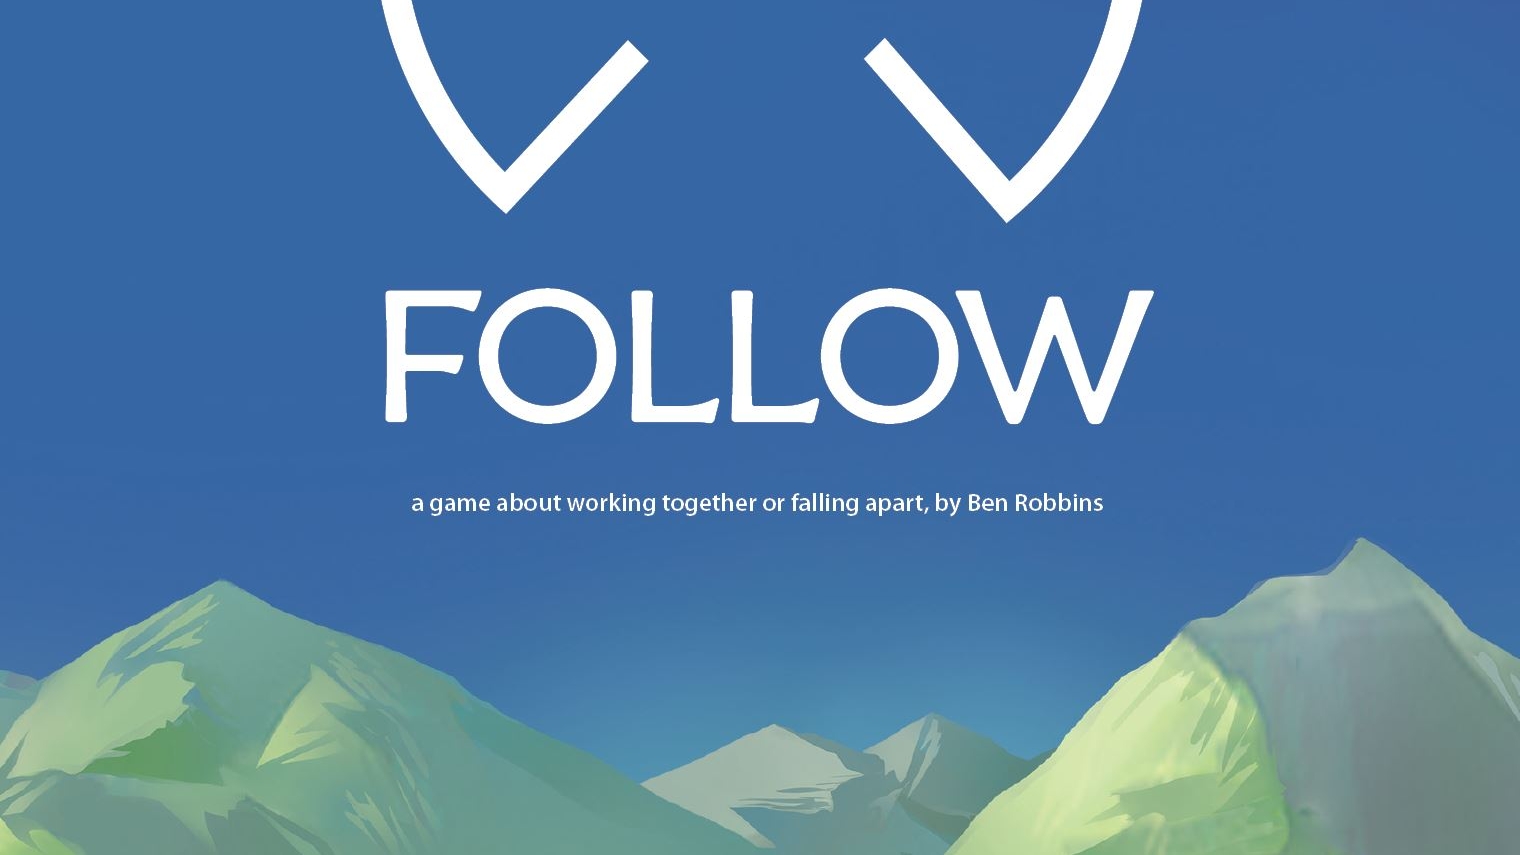 Teil des Covers der englischen Ausgabe von "Follow - a game about working together or falling apart, by Ben Robbins". Man sieht einen blauen Himmel und grün-graue Berge am unteren Bildrand.